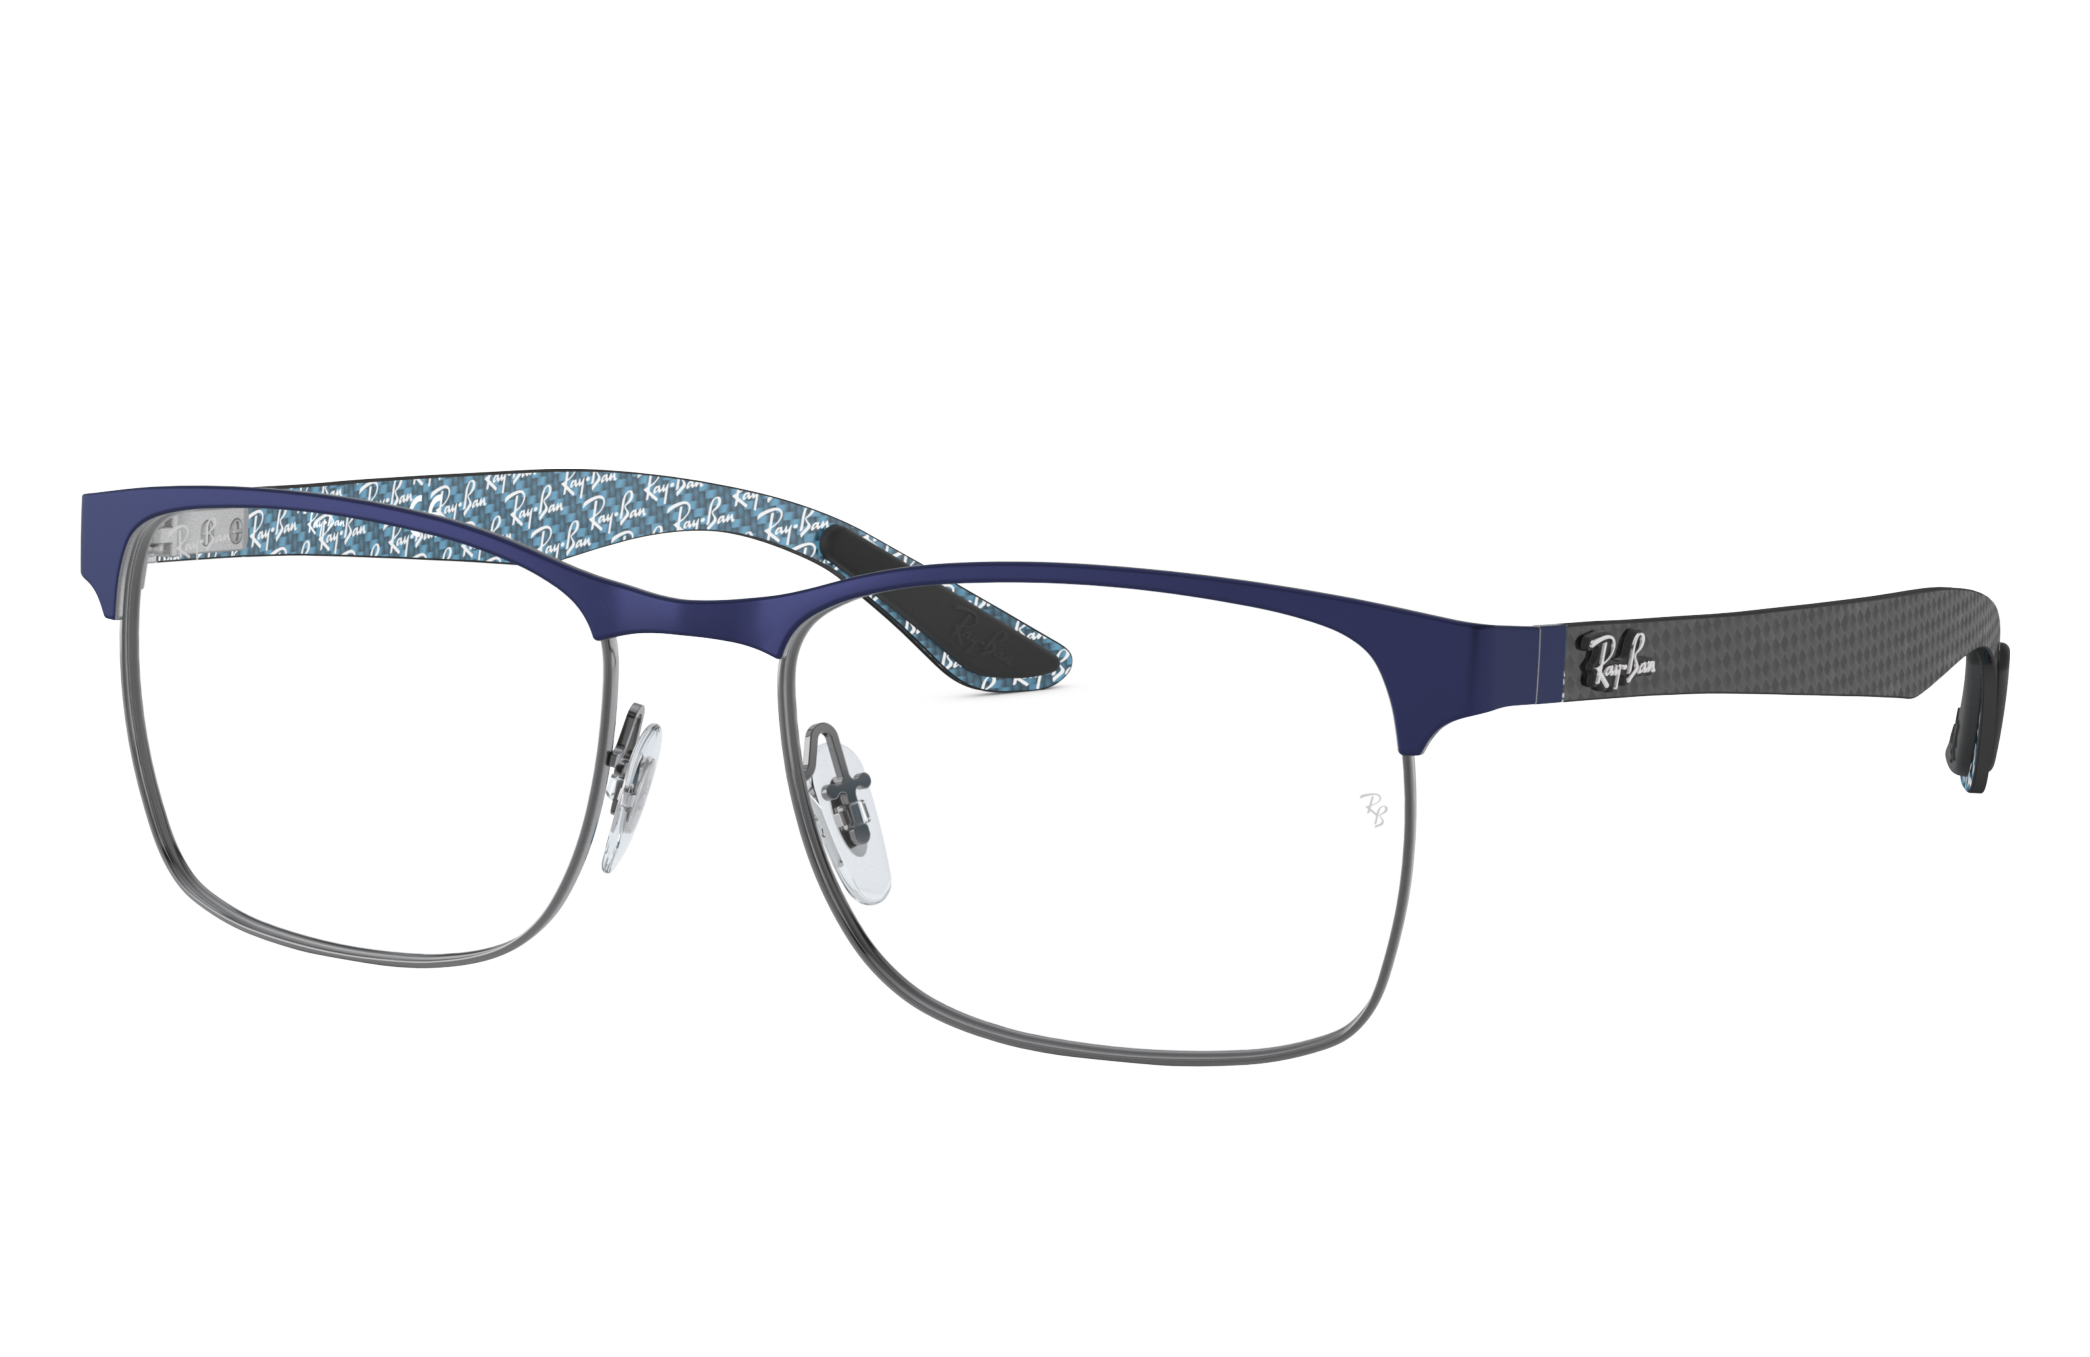 Arriba 105+ imagen ray ban carbon fiber eyeglasses - Abzlocal.mx